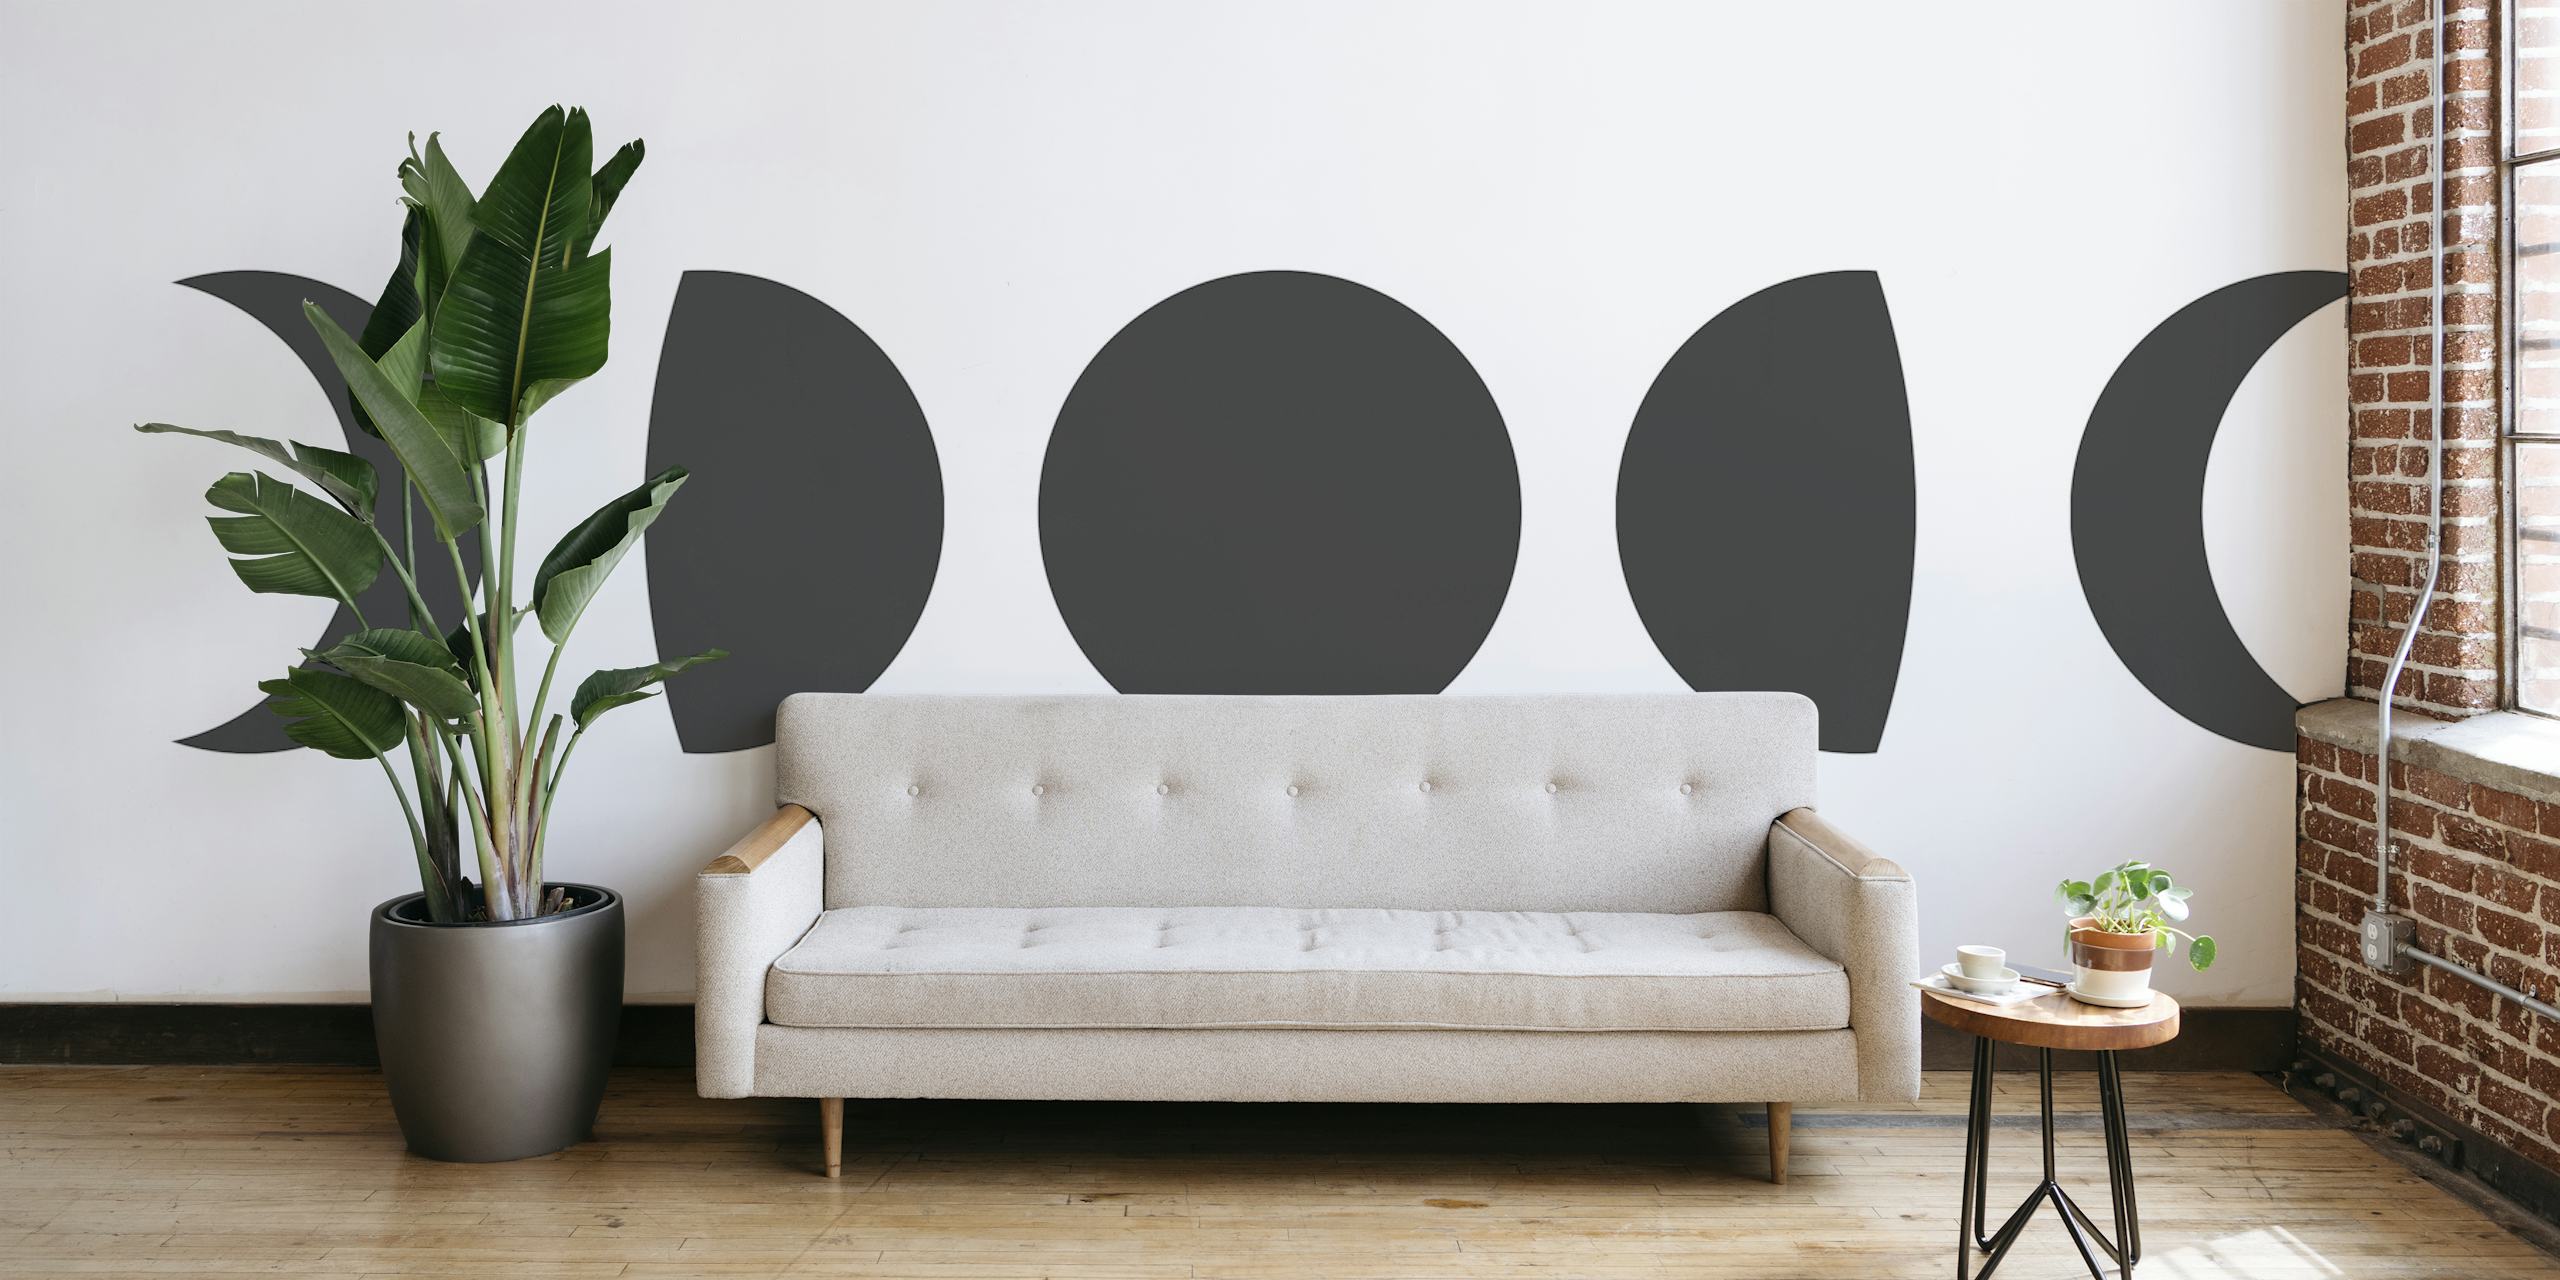 Mural de parede com fases da lua em um design minimalista em preto e branco